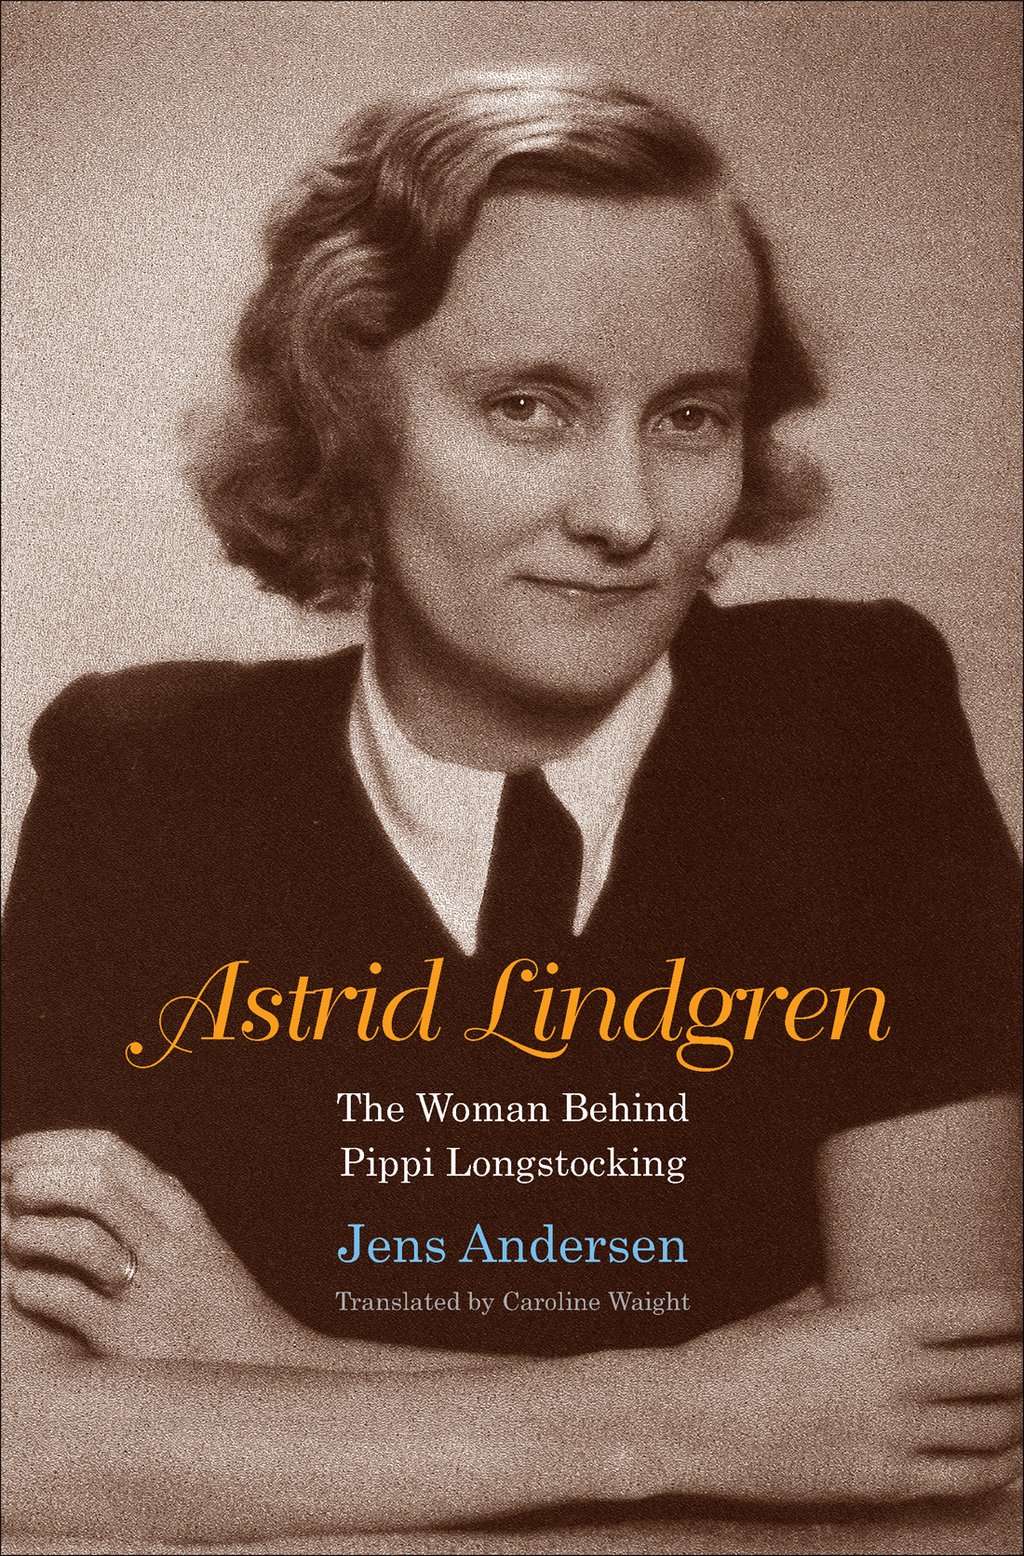 Astrid Lindgren (eBook) - Jens Andersen,